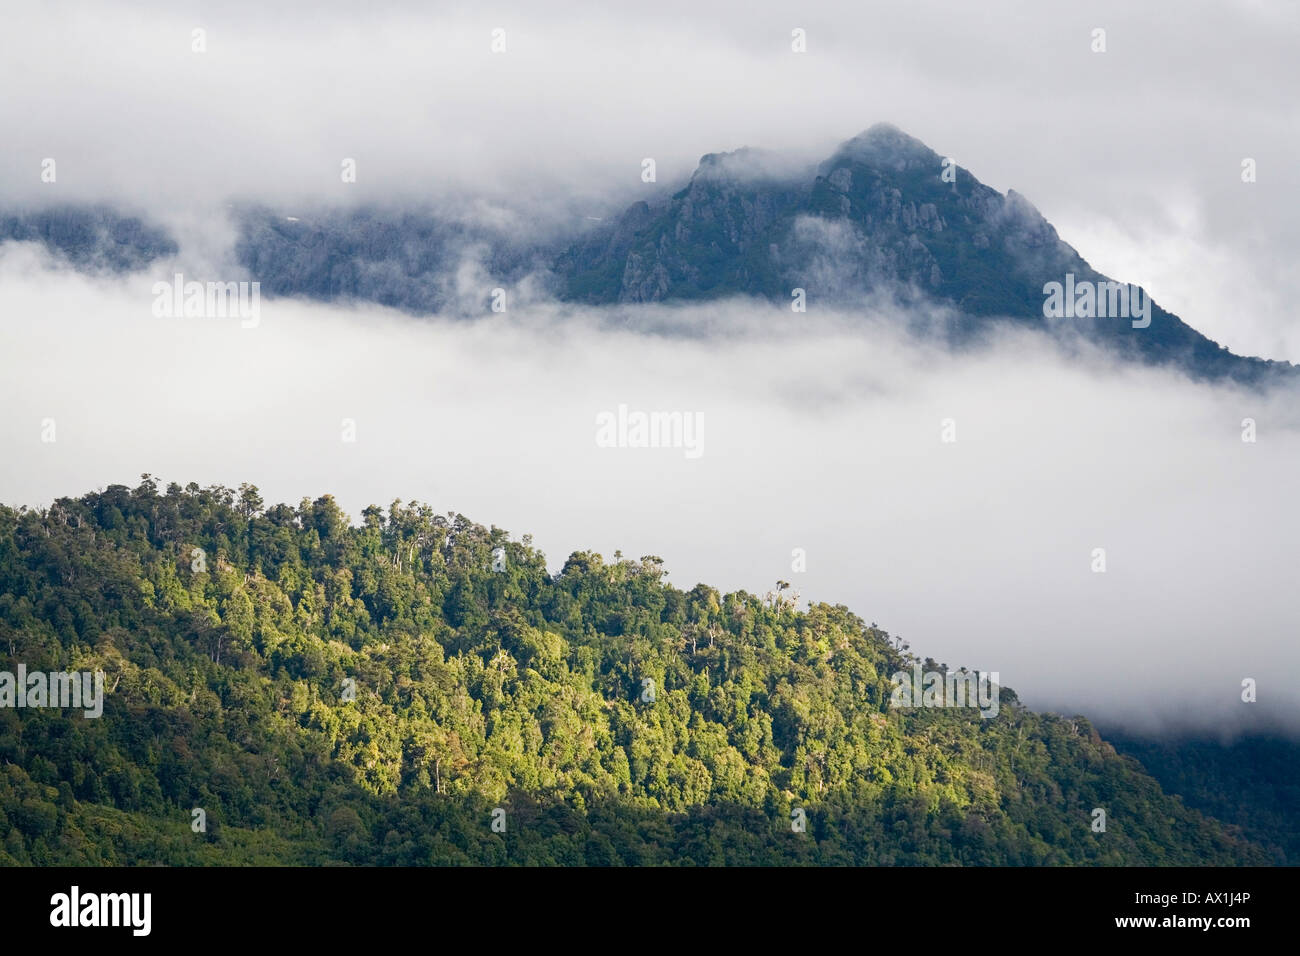 Foresta con nebbia e nuvole, Hornopirén, Carretera Austral, Cile, Sud America Foto Stock